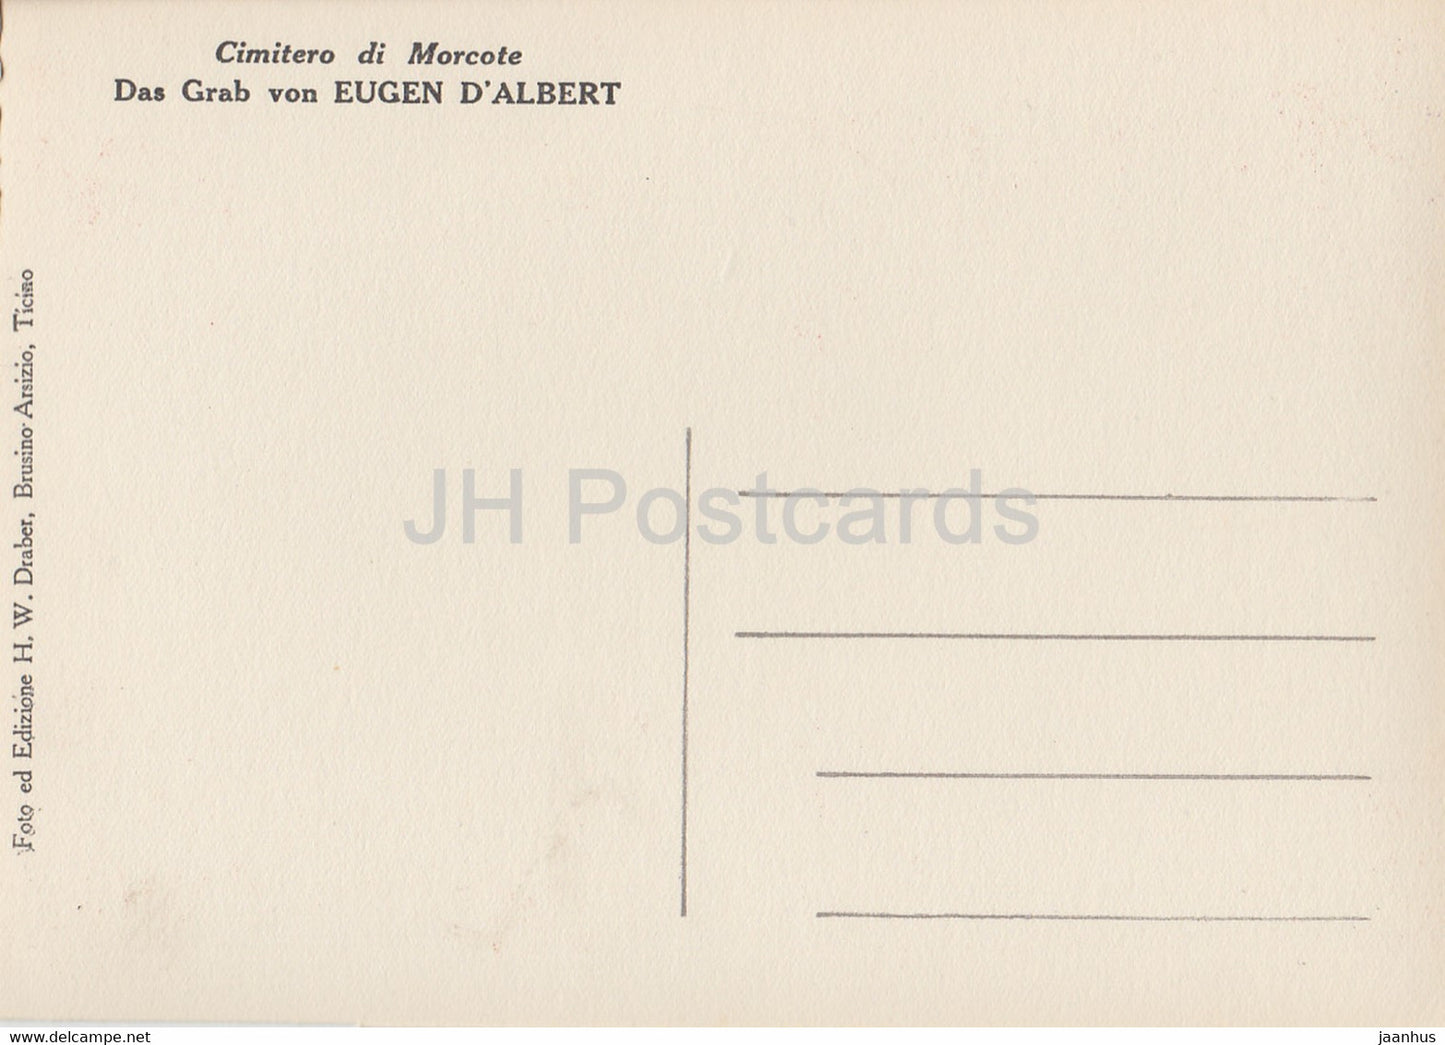 Cimitero di Morcote - Das Grab von Eugen D'Albert - carte postale ancienne - Suisse - inutilisée